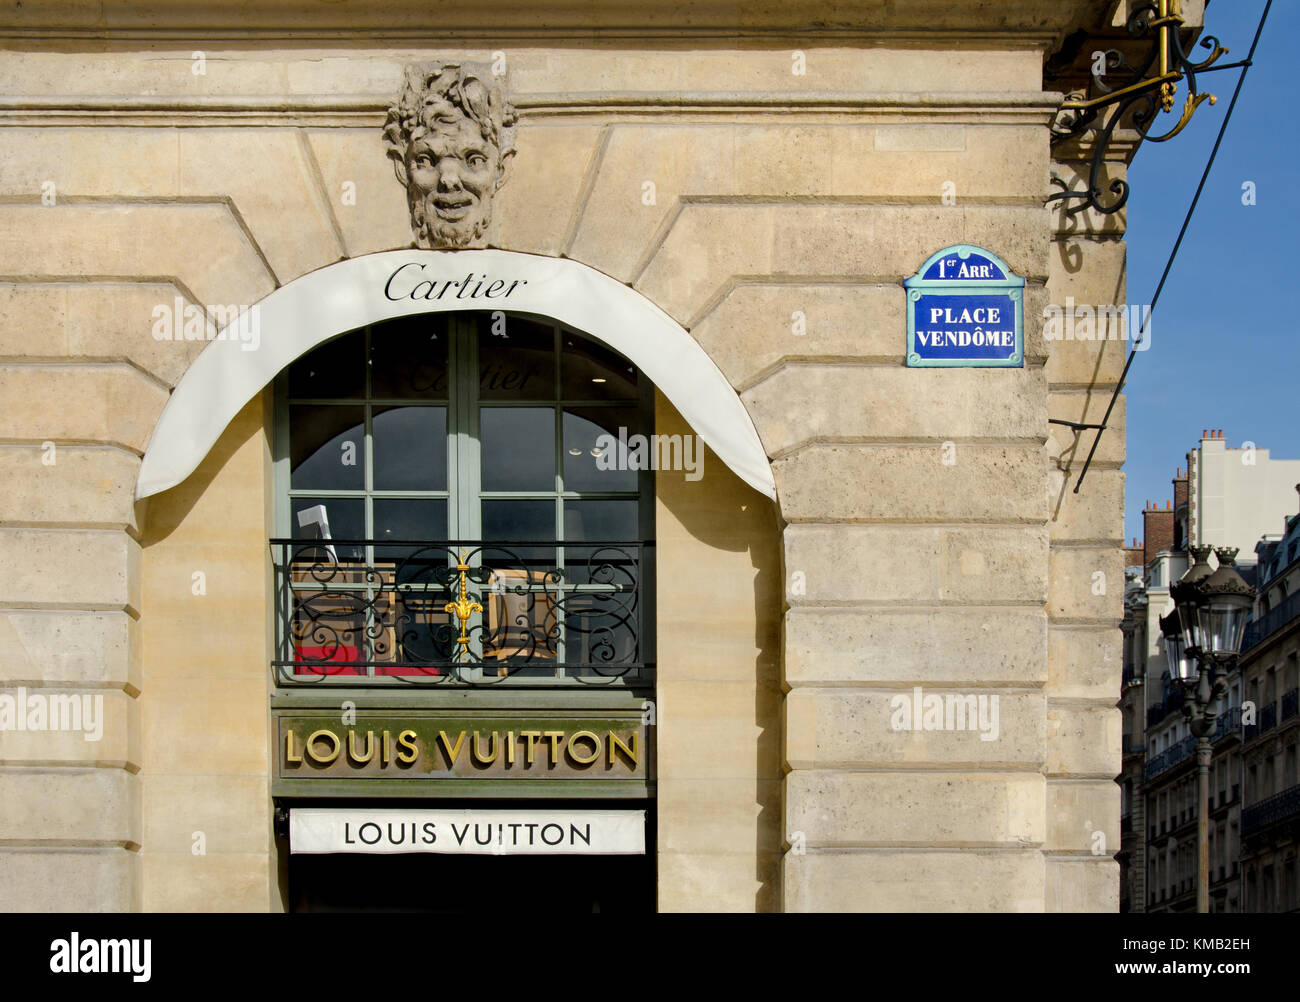 Vertical De La Tienda De Louis Vuitton En Paris France Fotografía editorial  - Imagen de publicidad, producto: 262367327